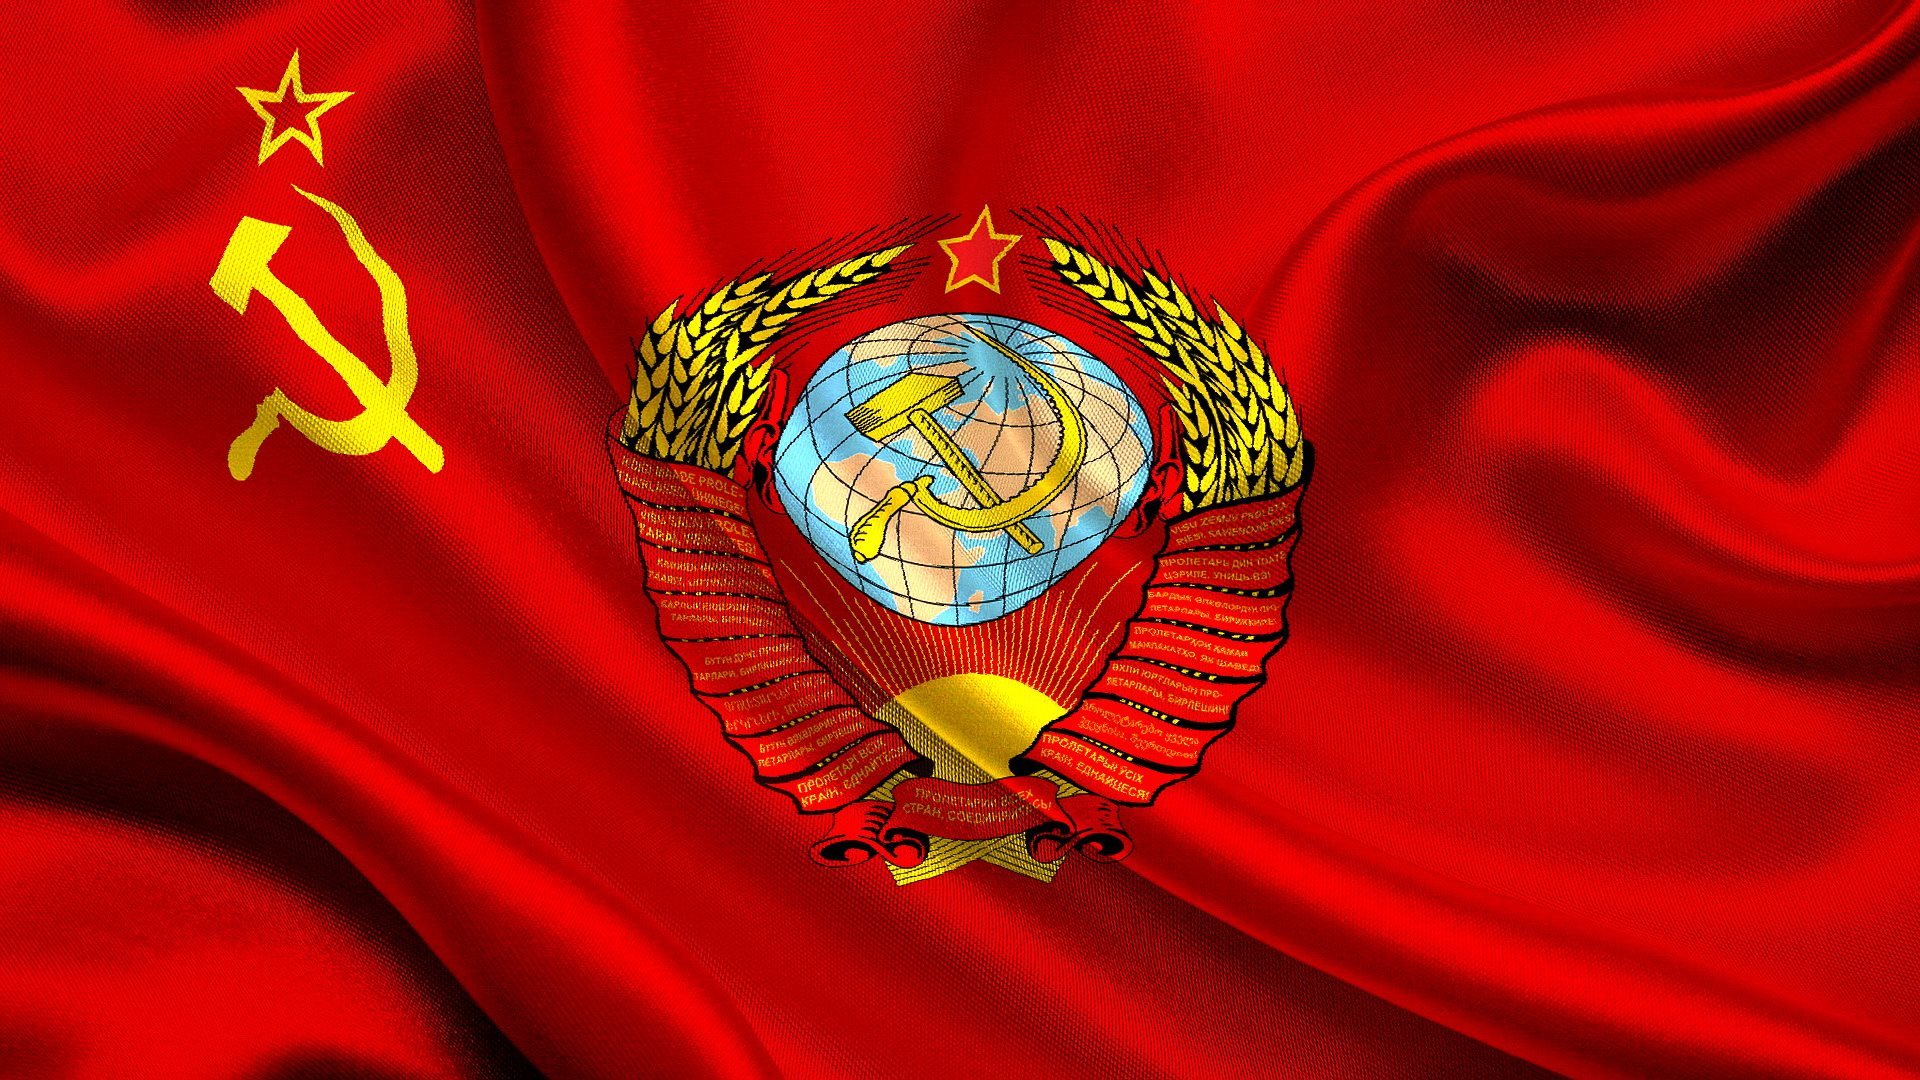 Скачать обои Флаг, СССР, Герб, Флаг СССР, раздел текстуры в разрешении  1920x1080